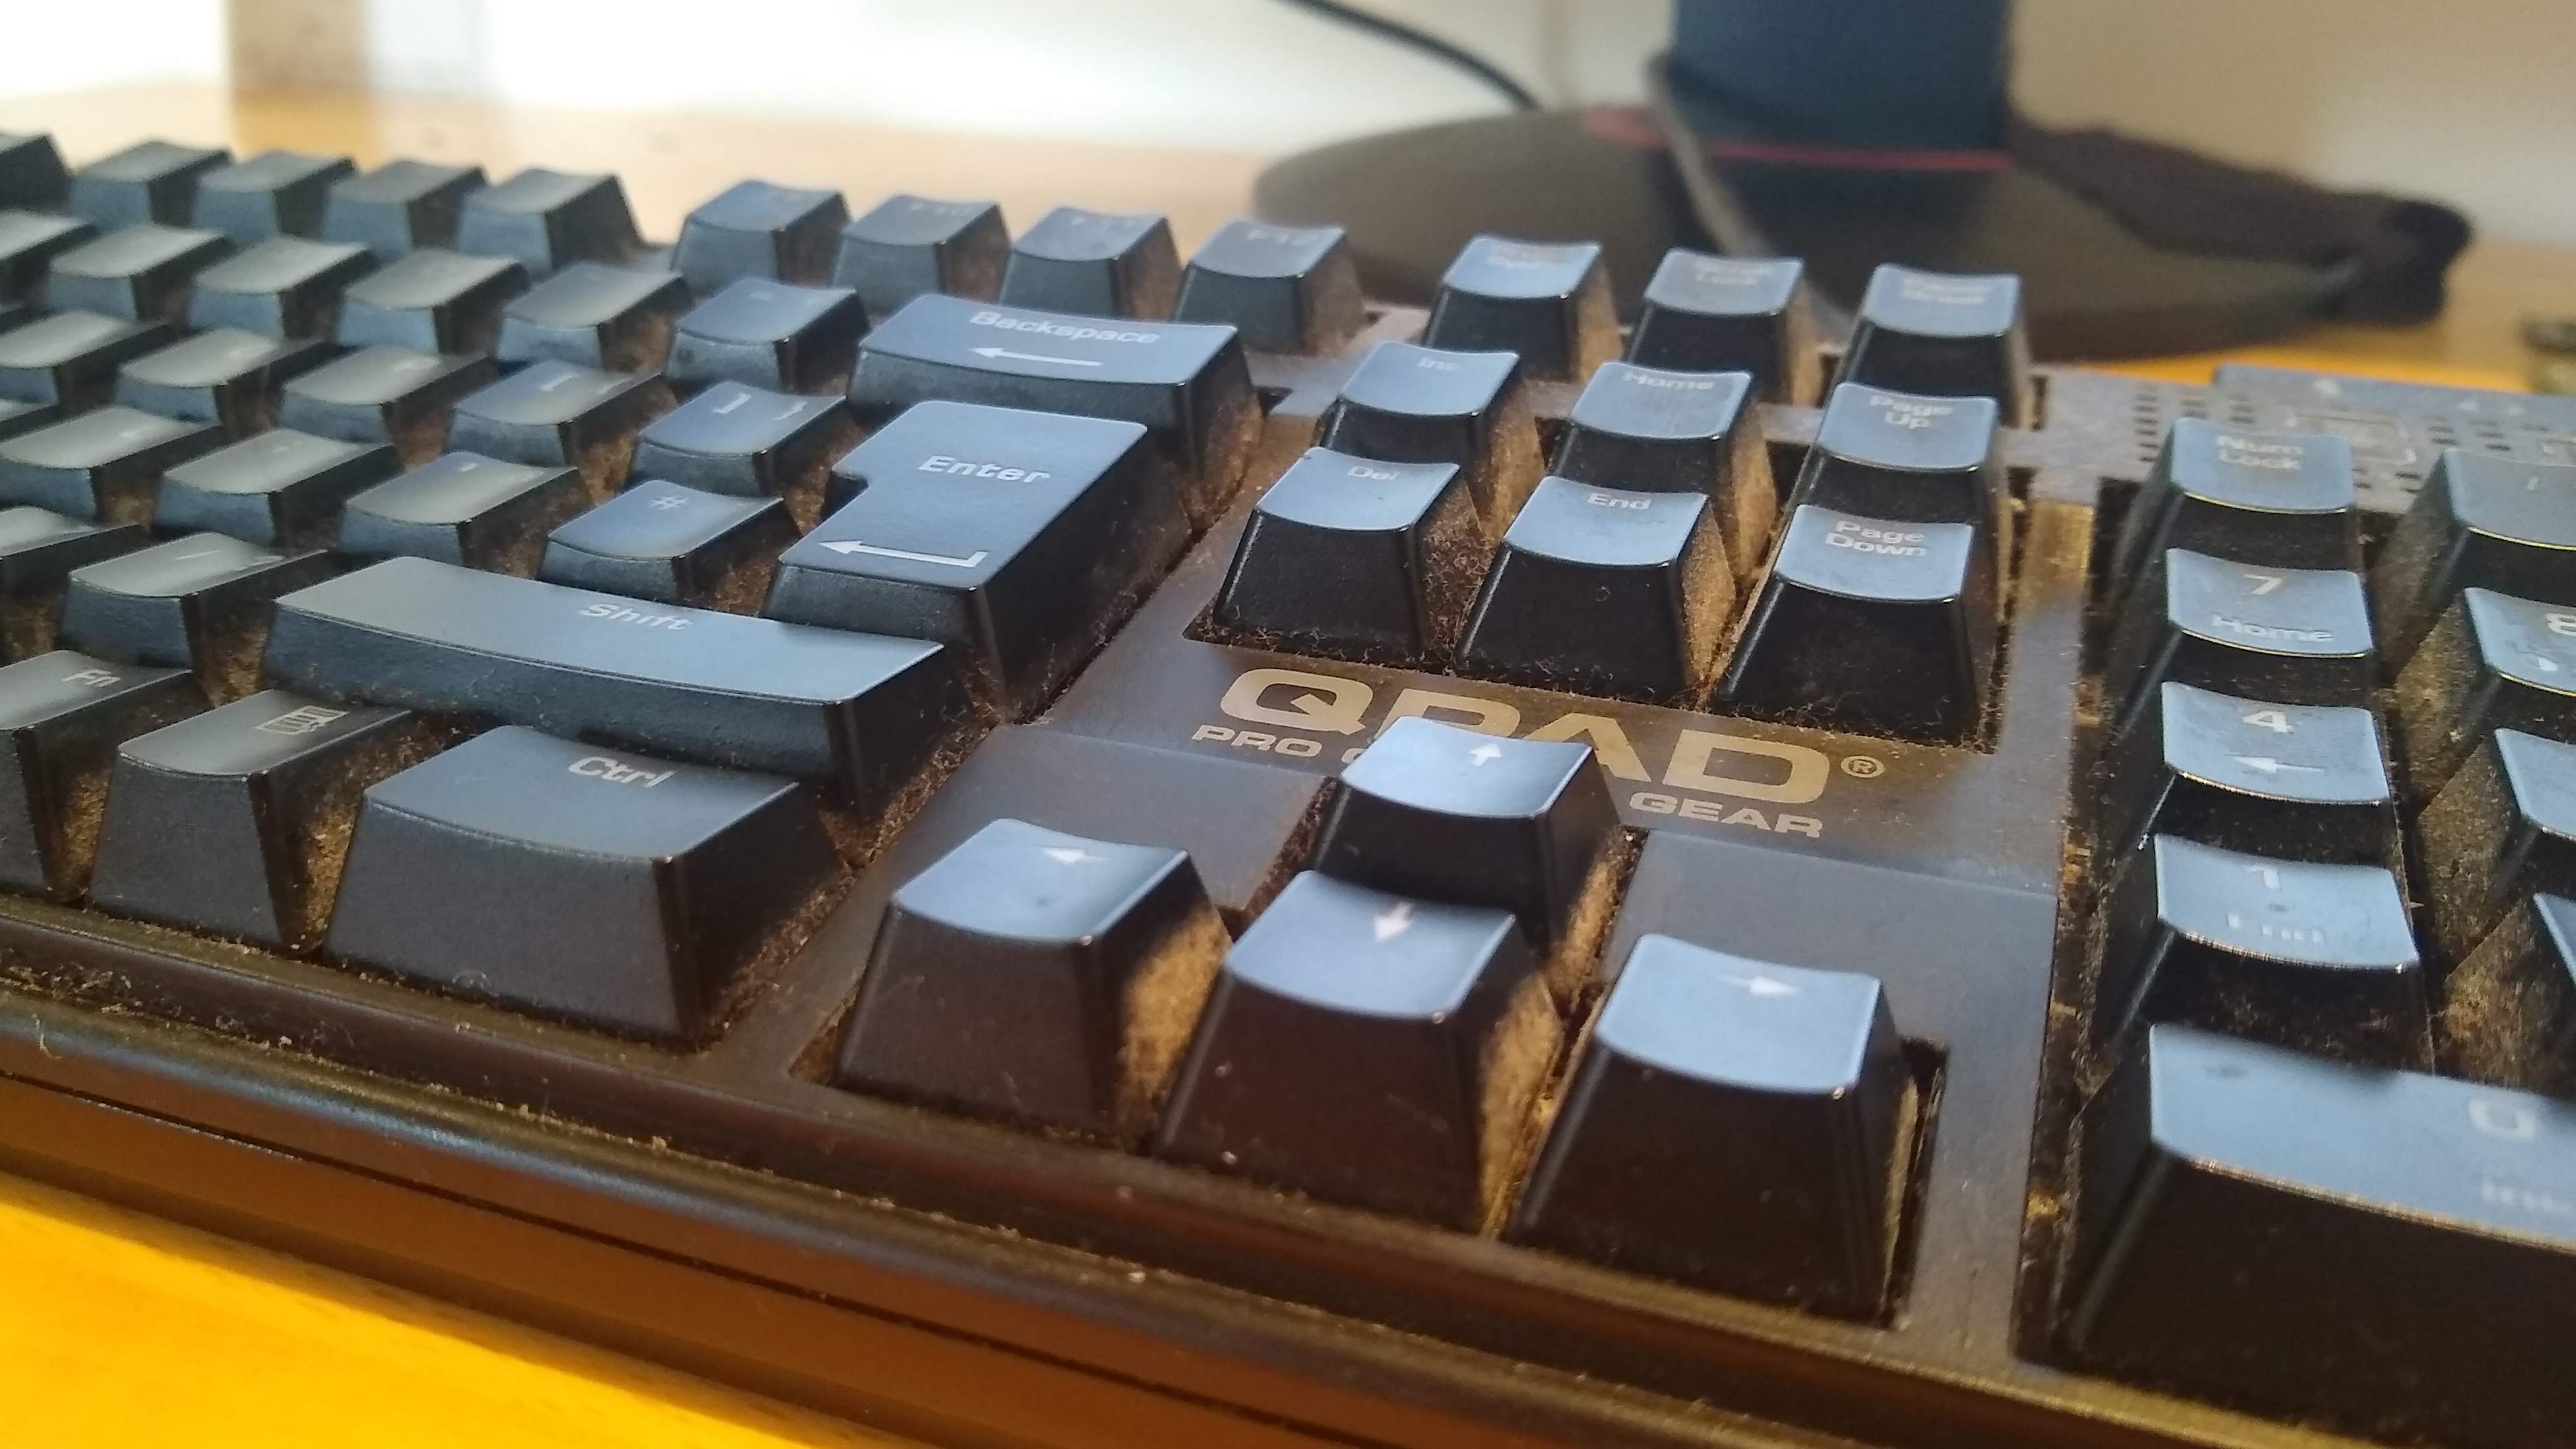 Cara membersihkan keyboard mekanis Anda secara mendalam